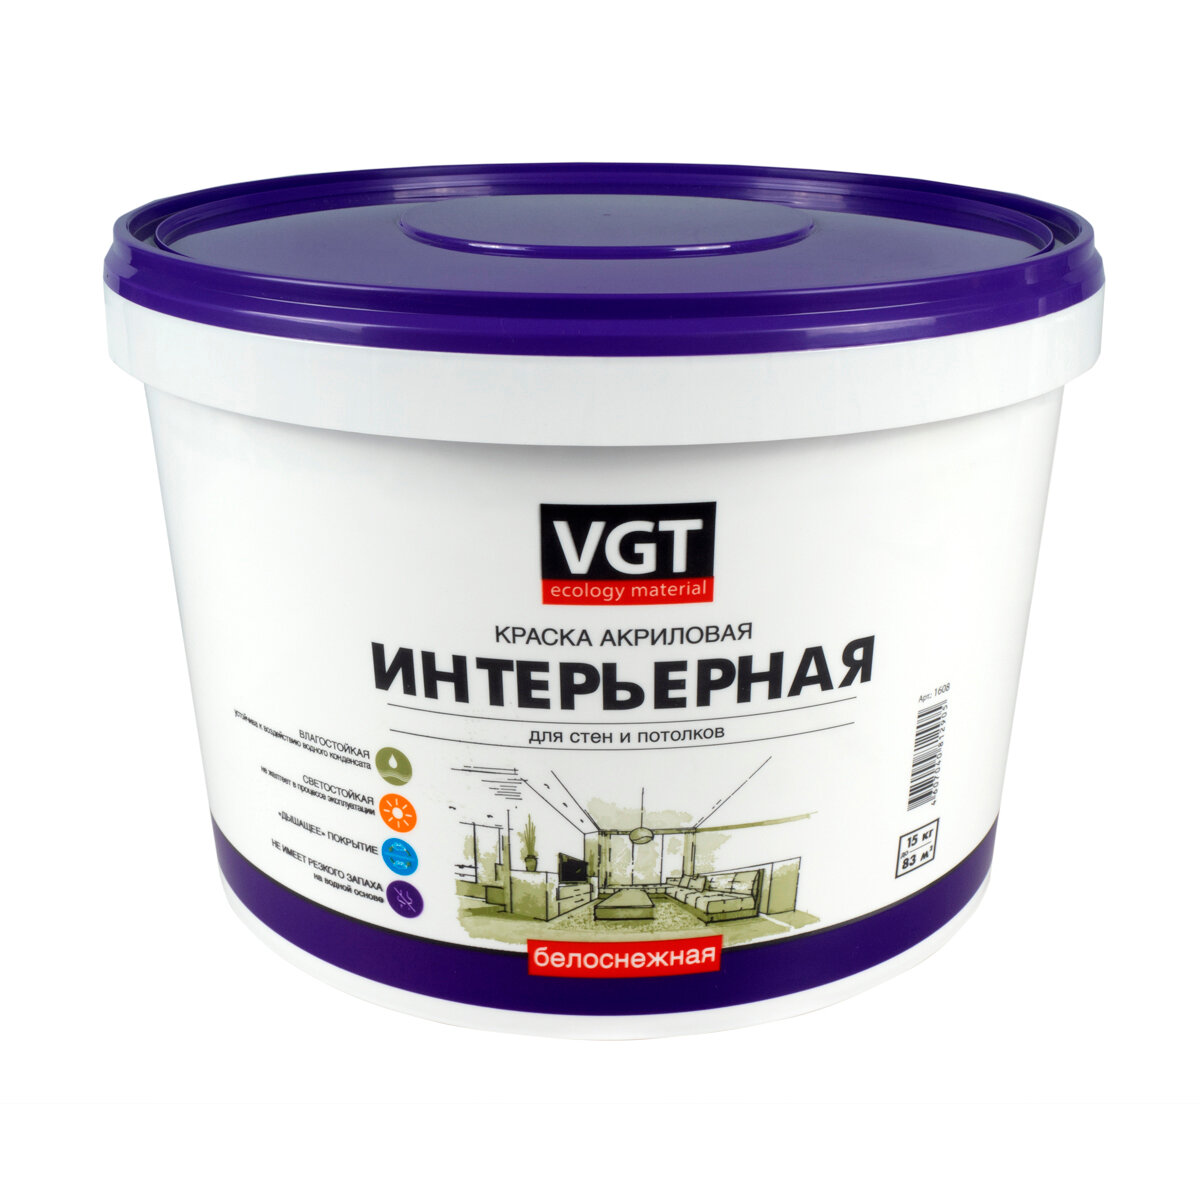 Краска акриловая VGT ВД-АК-2180 для стен и потолков «Белоснежная» моющаяся